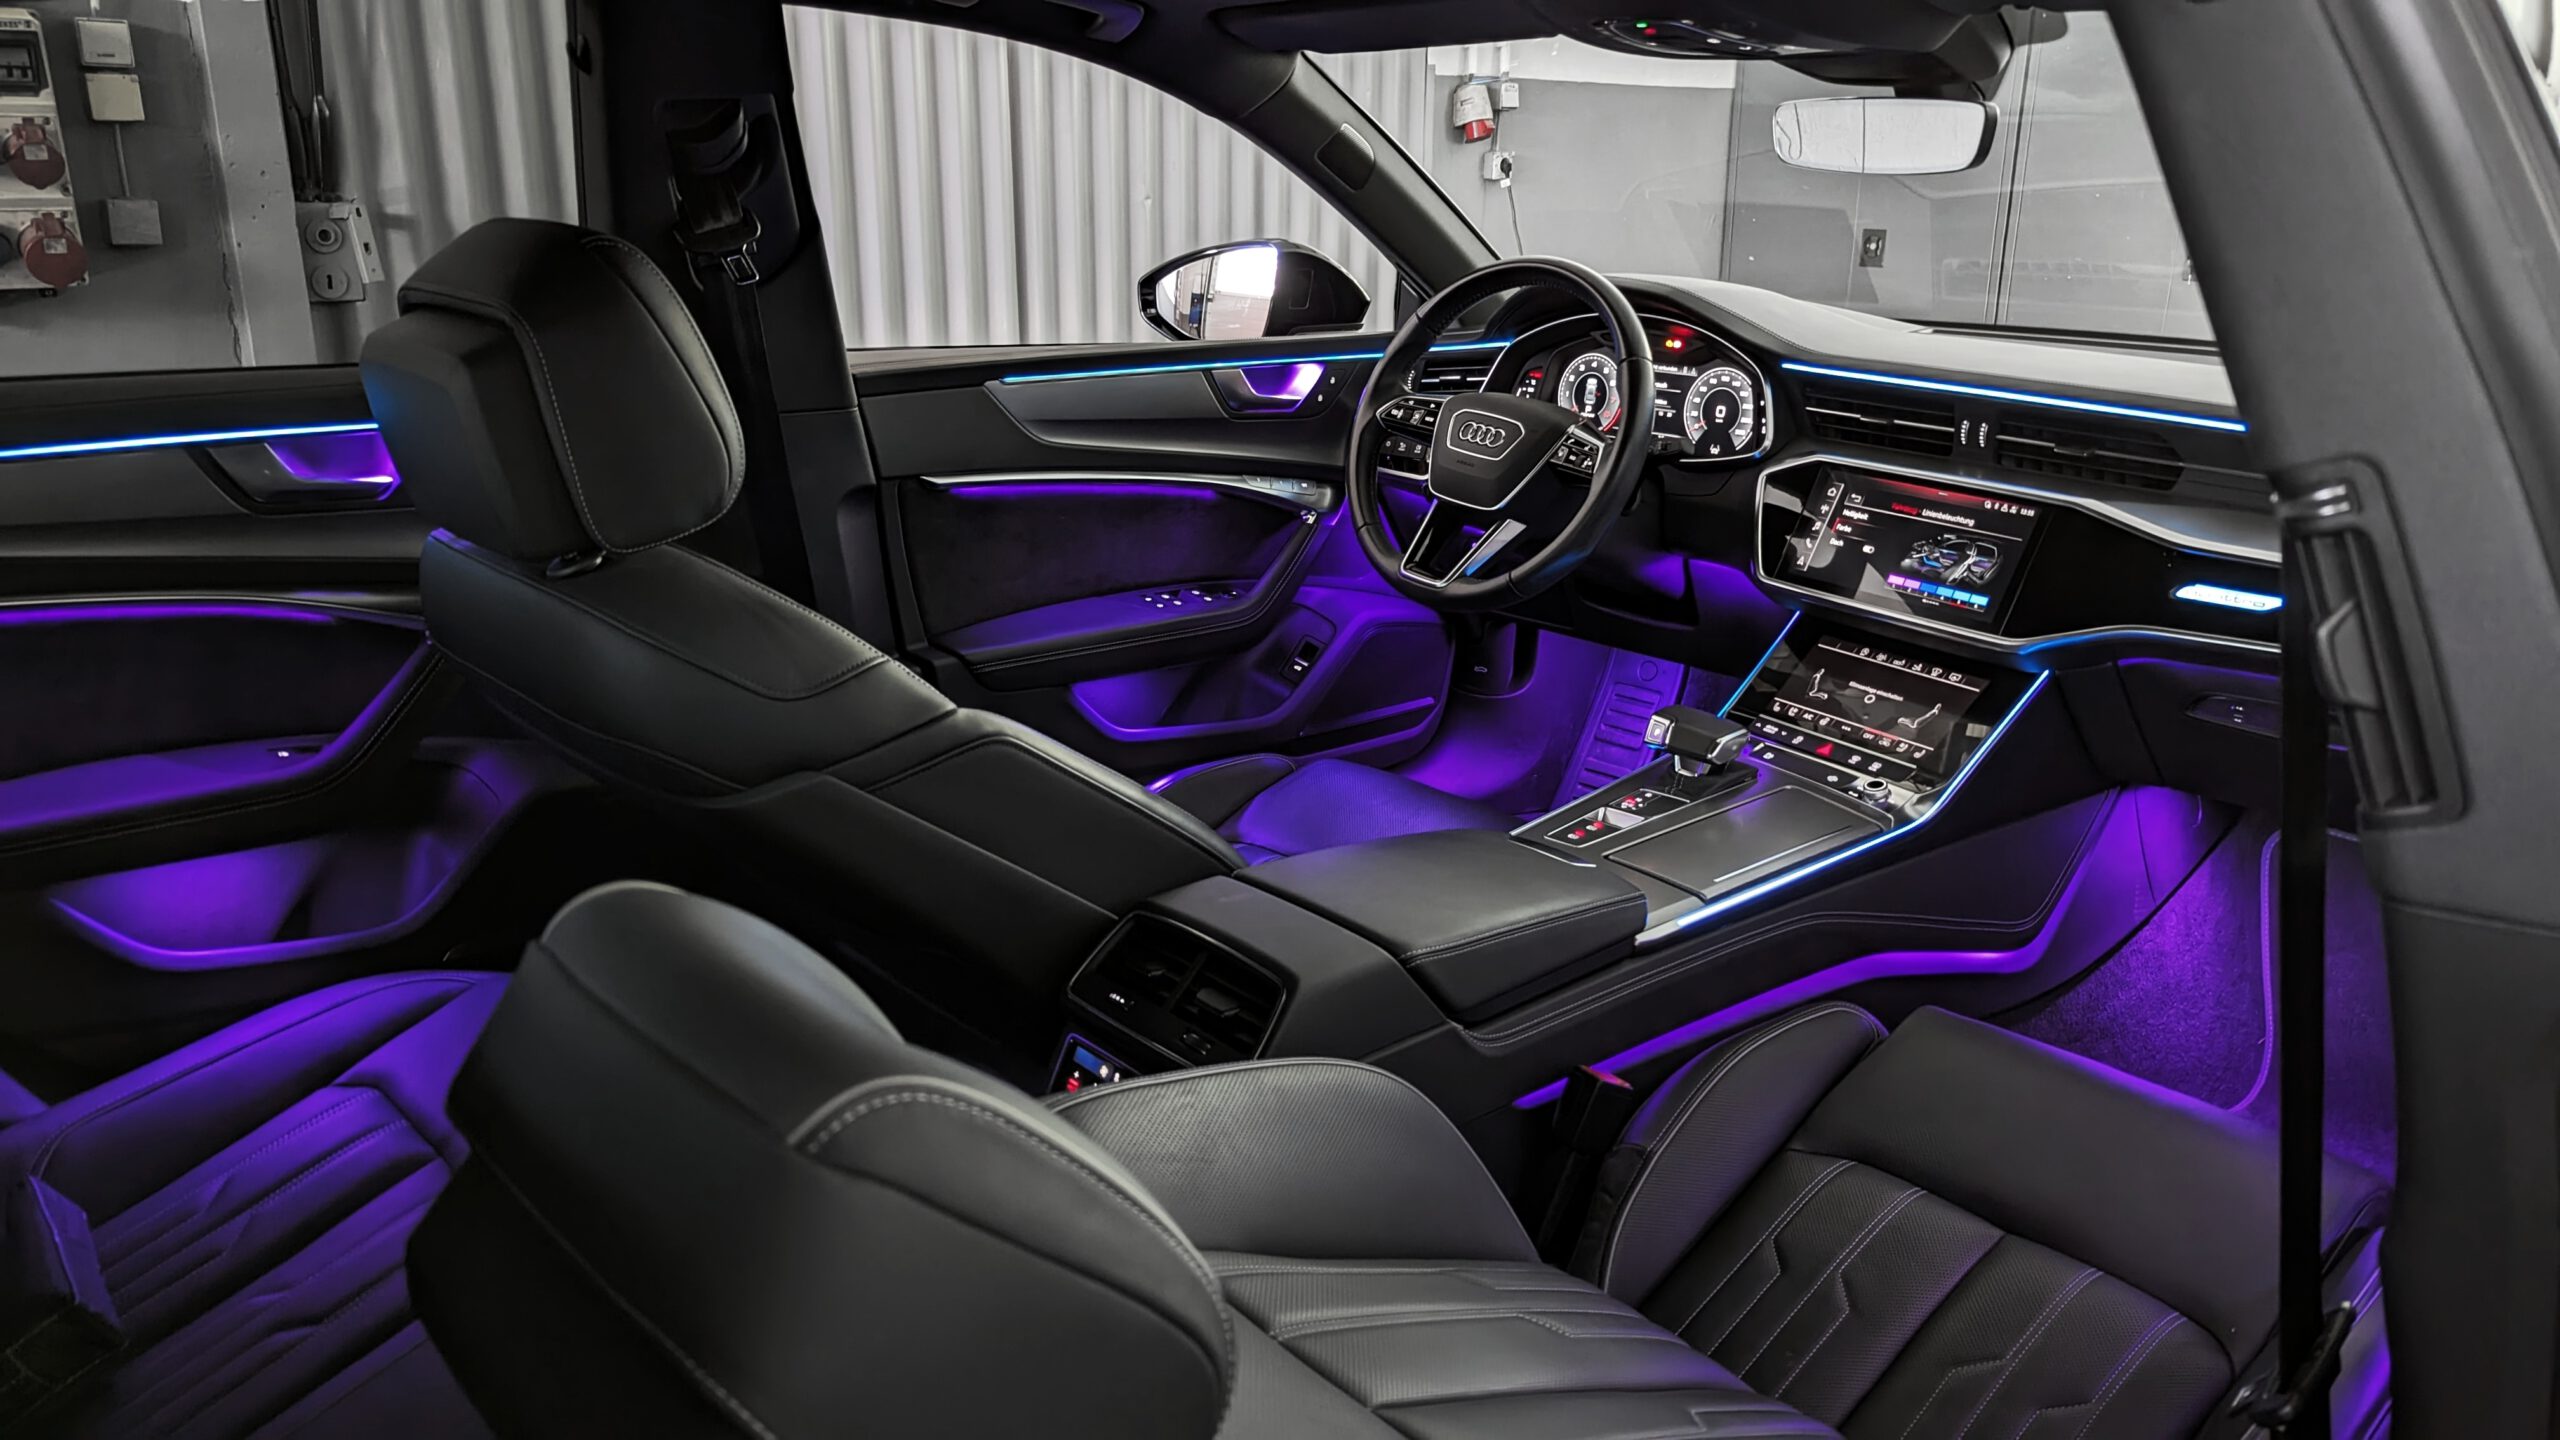 Audi A6 A7 c8 Ambientebeleuchtung Ambiente Licht Led Nachrüsten in